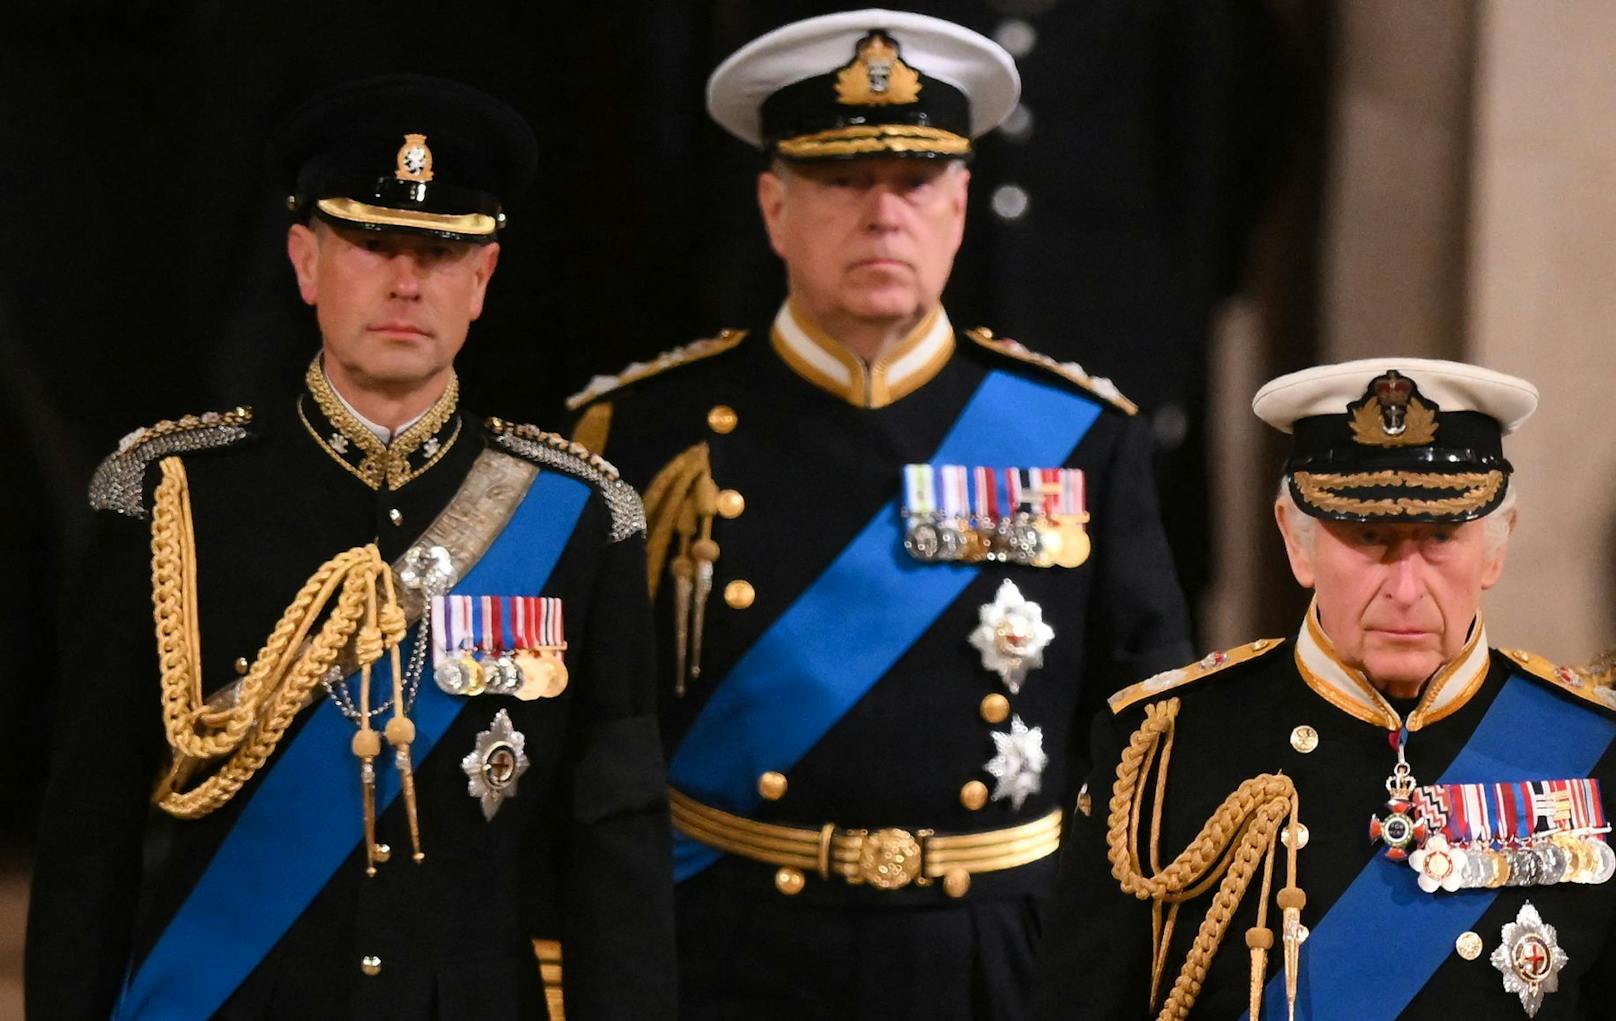 Der in Ungnade gefallene zweitälteste Sohn der Queen darf normalerweise keine Uniformen mehr tragen. Auch beim Staatsbegräbnis am Montag darf er nicht in Uniform erscheinen.